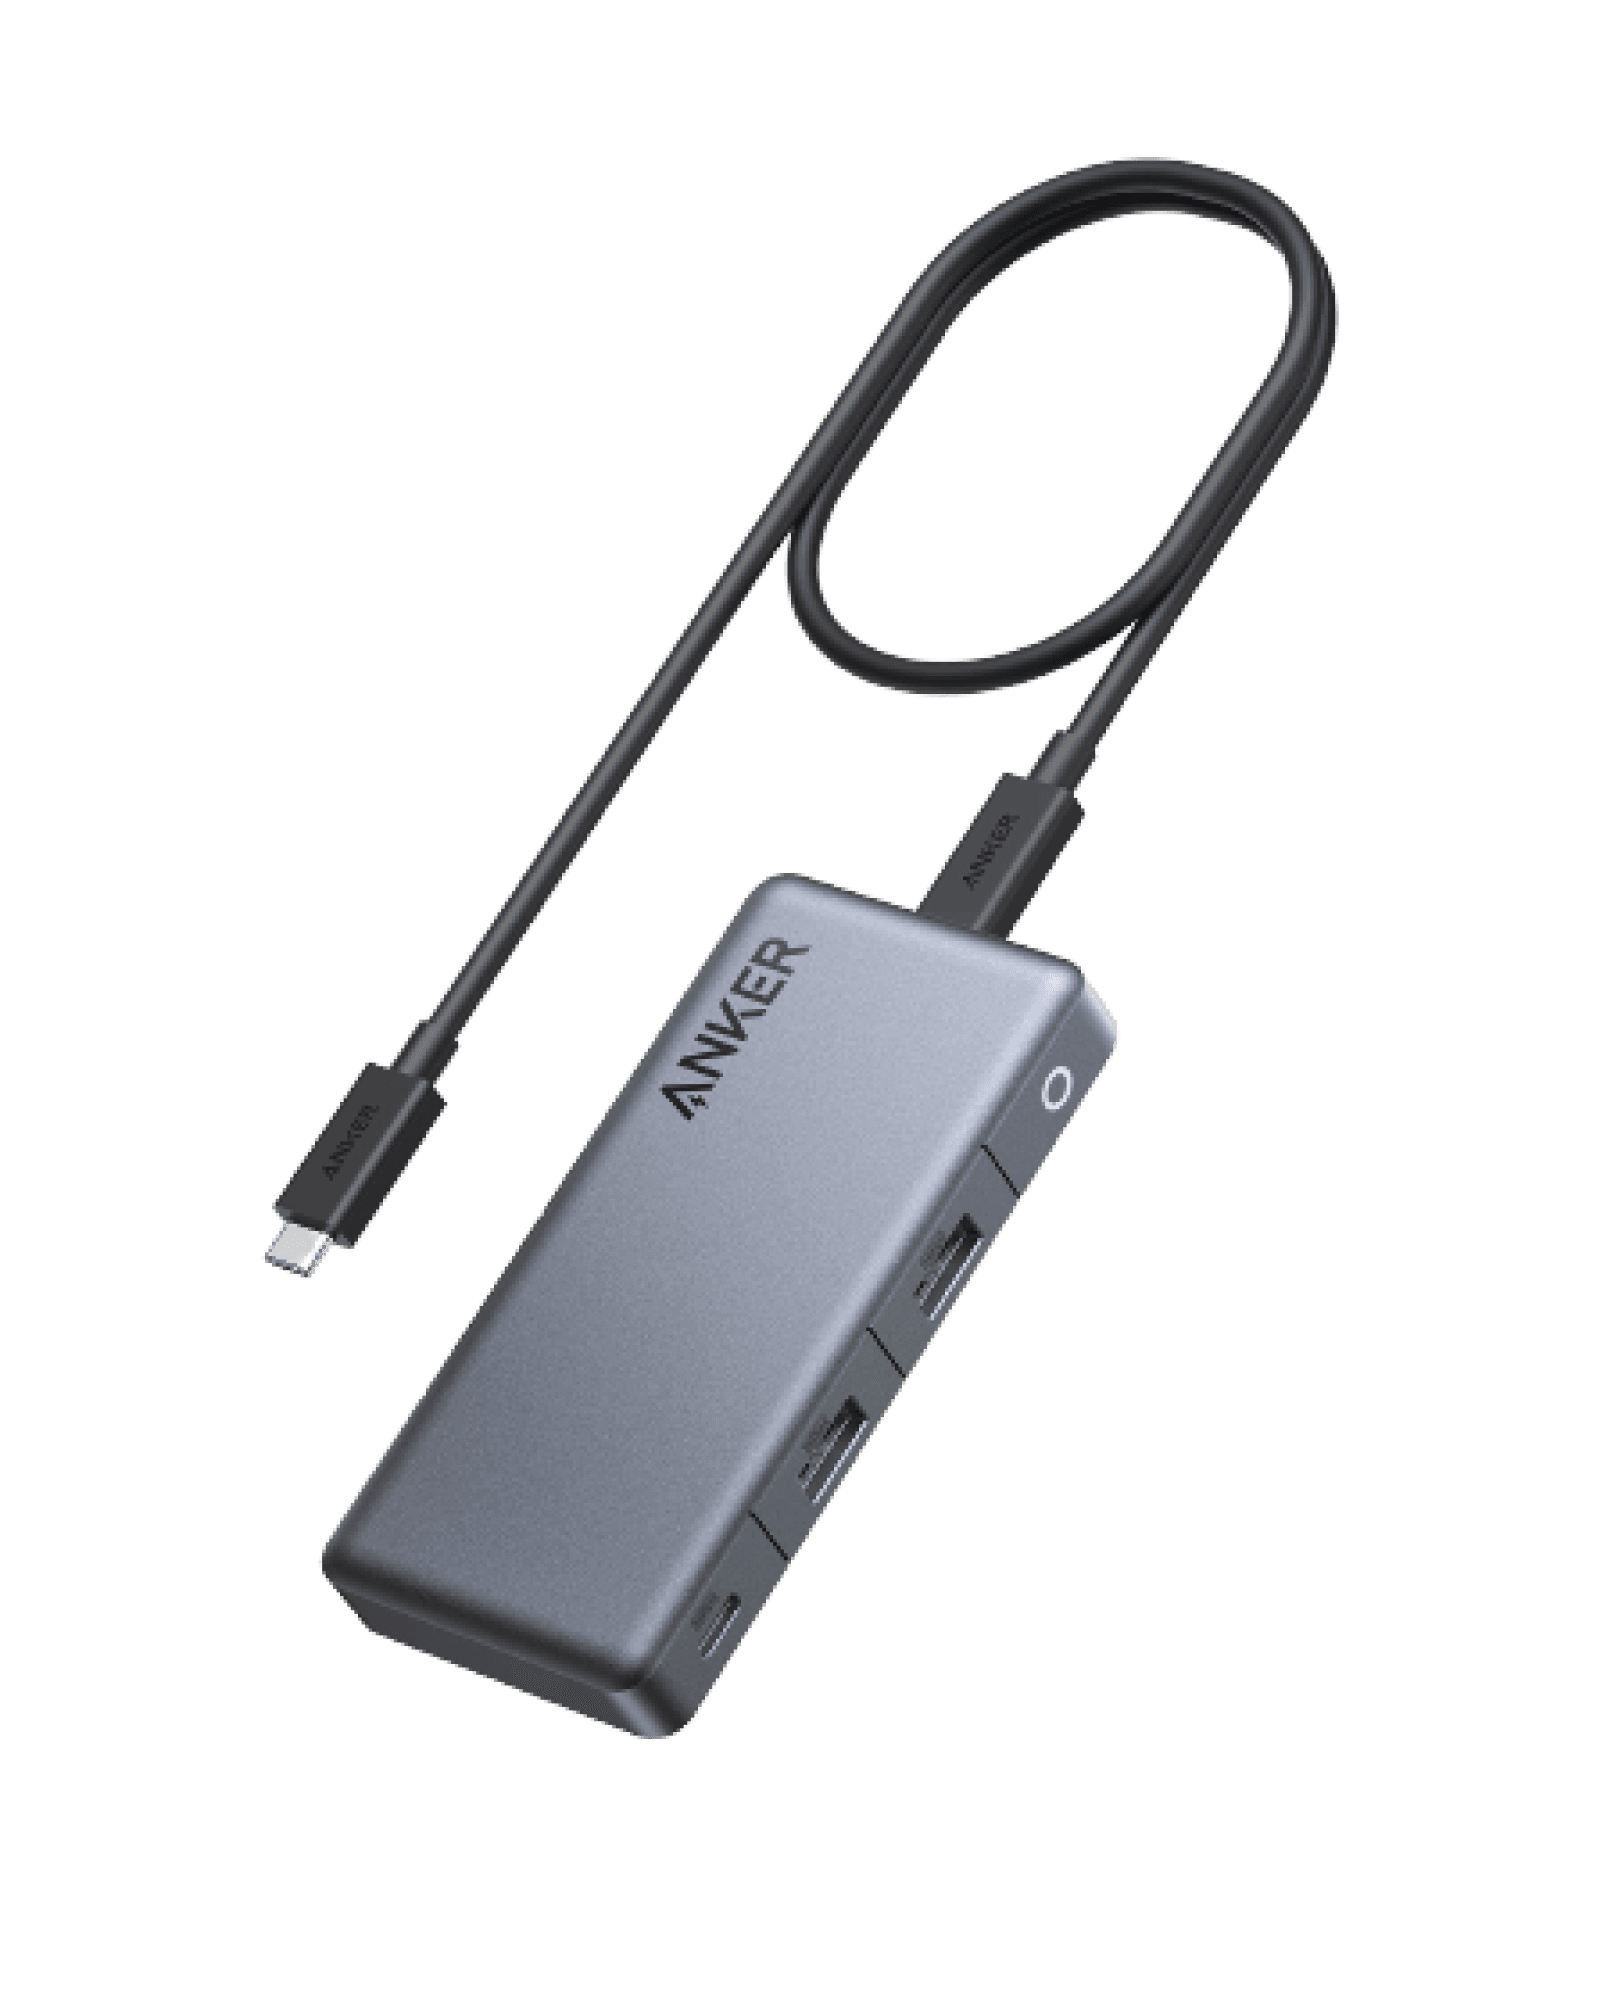 Anker <b>343</b> USB-C Hub (7-in-1, Dual 4K HDMI)